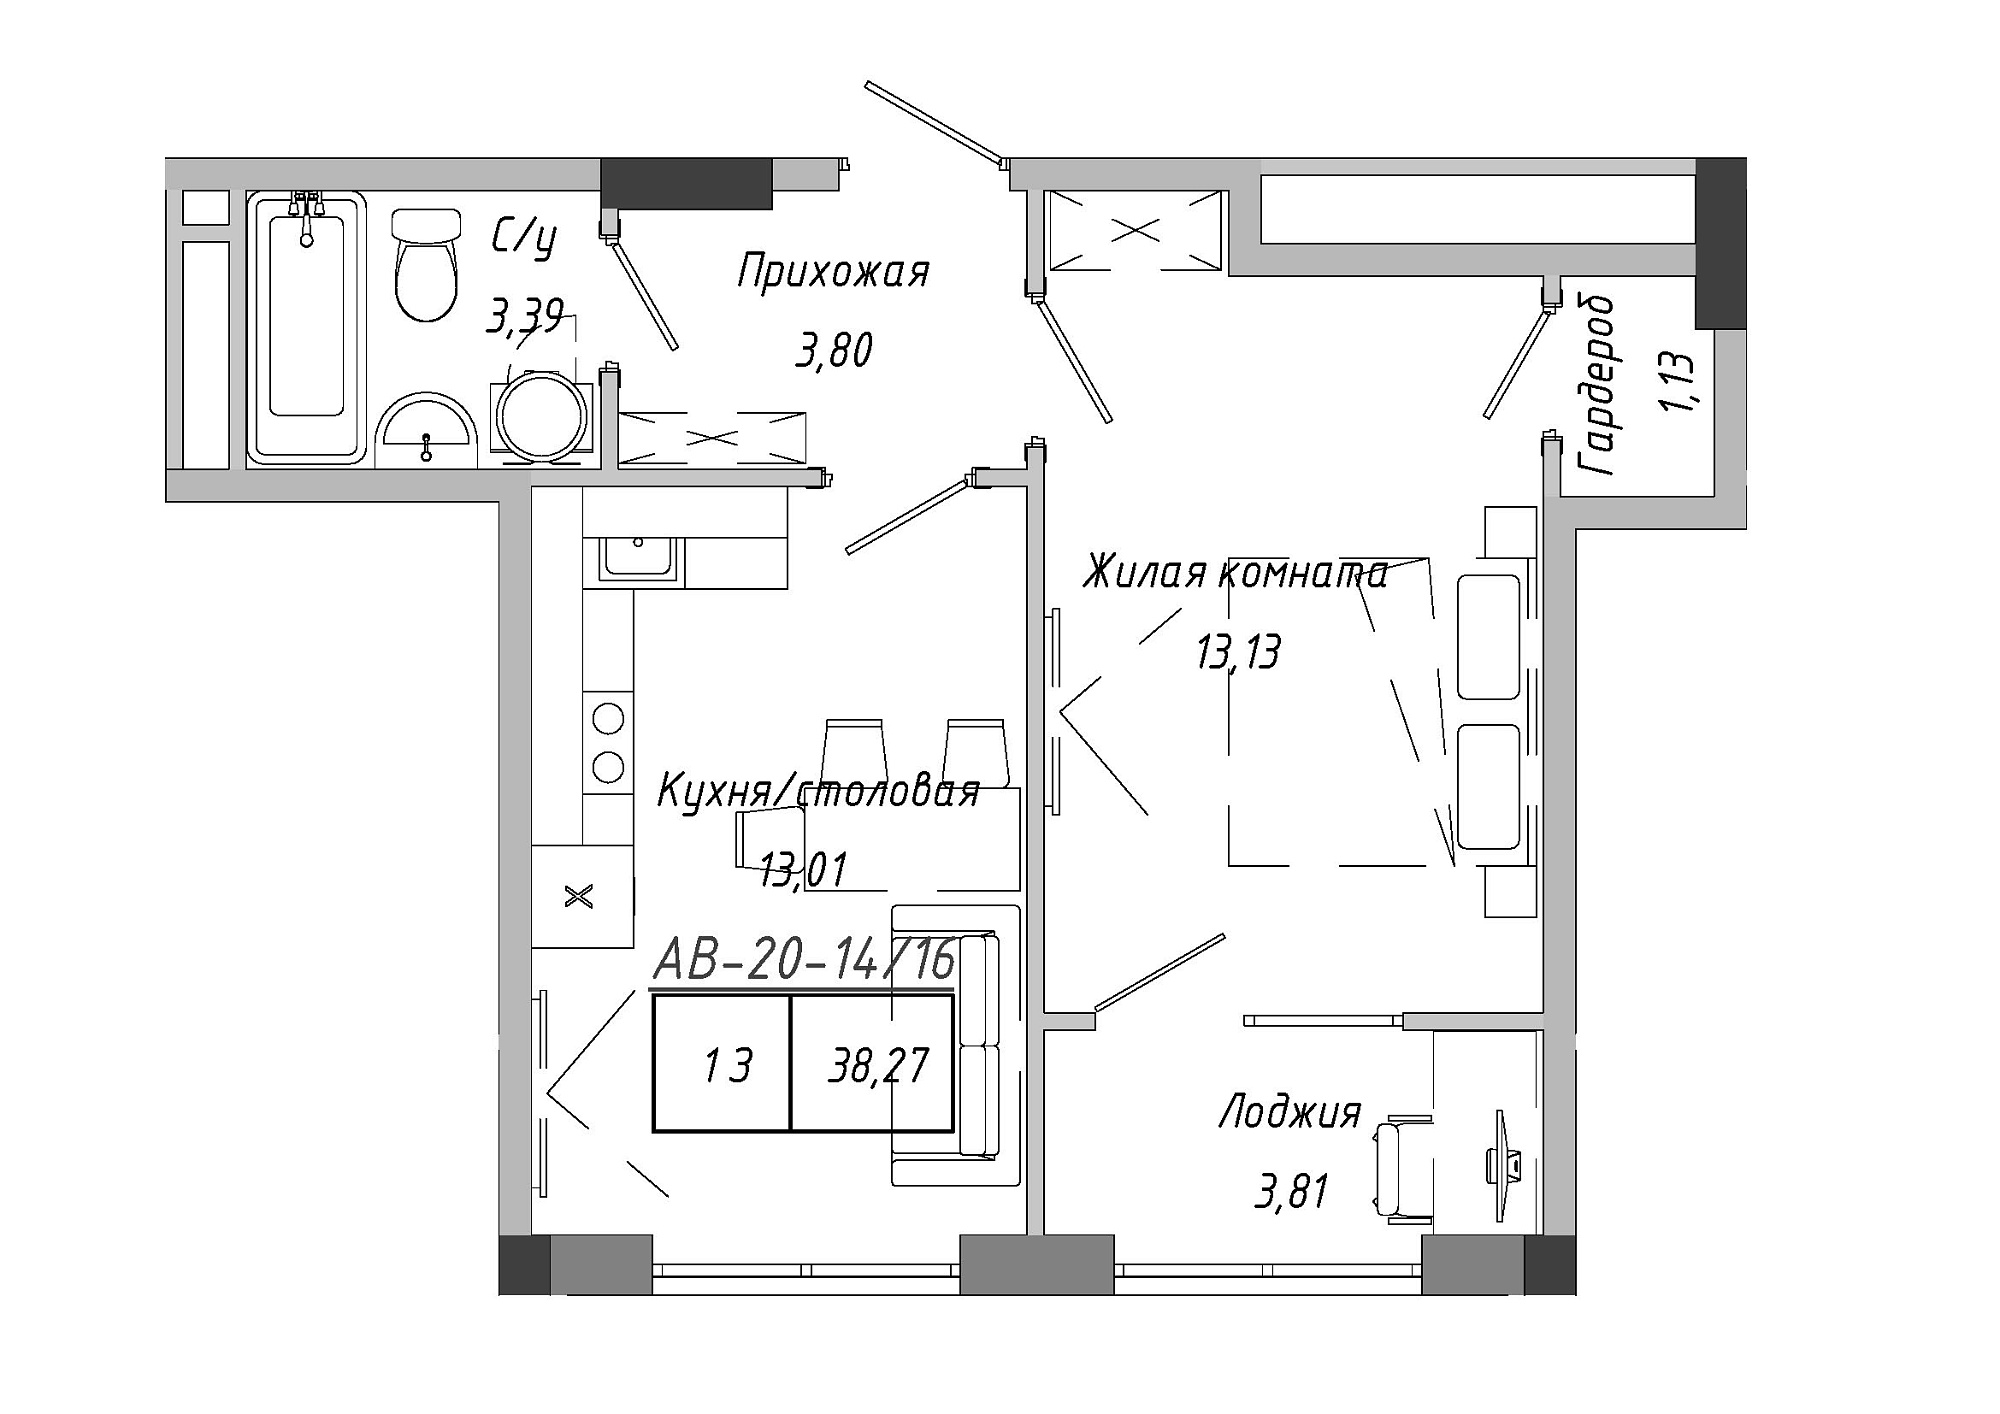 Планування 1-к квартира площею 38.27м2, AB-20-14/00116.